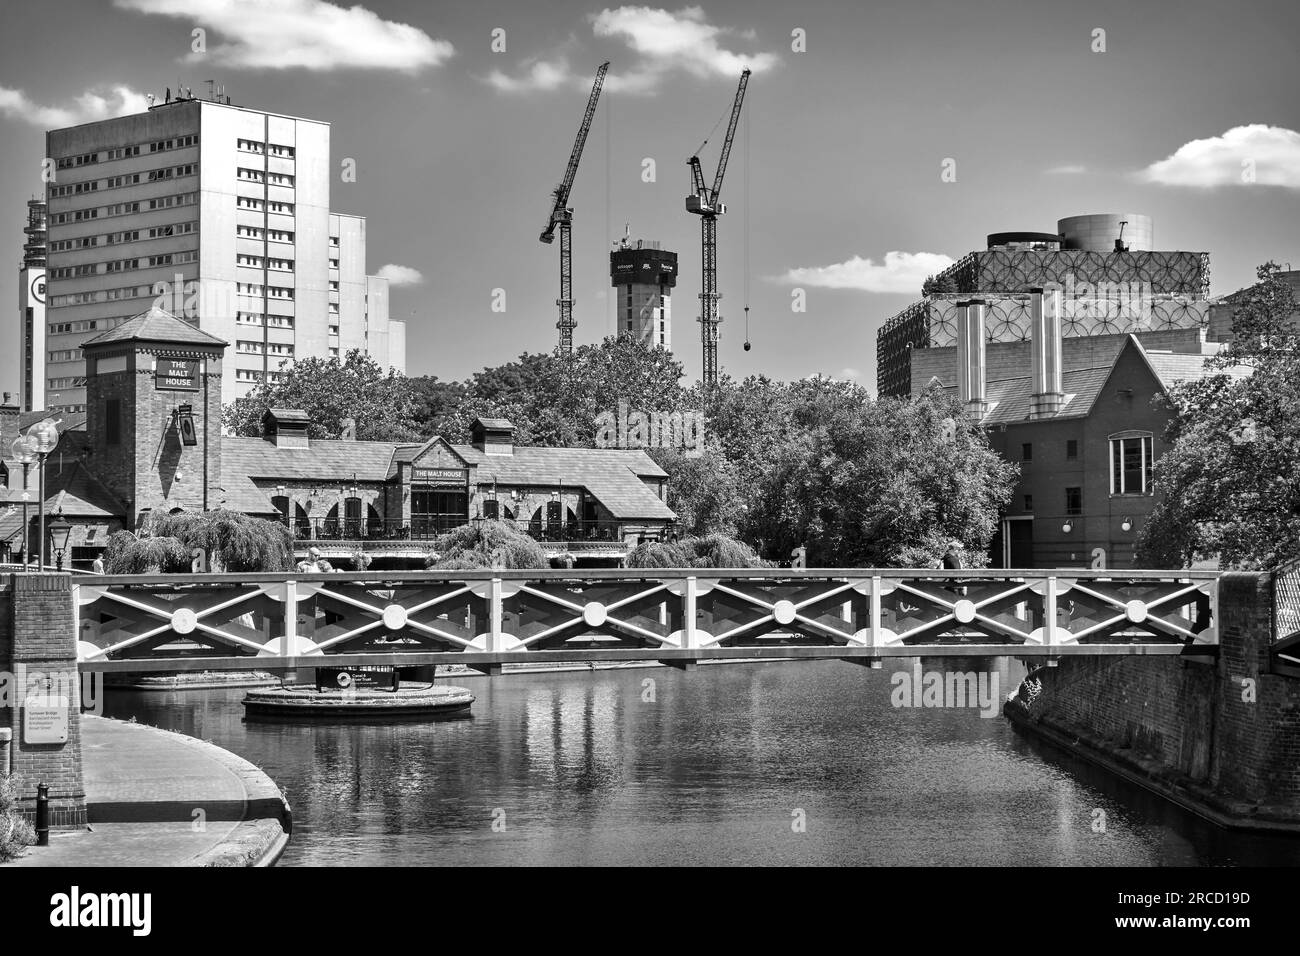 Fußbrücke über dem Kanal am Brindley Place, Birmingham Canal, Birmingham, England, Großbritannien. Schwarzweißfotografie Stockfoto